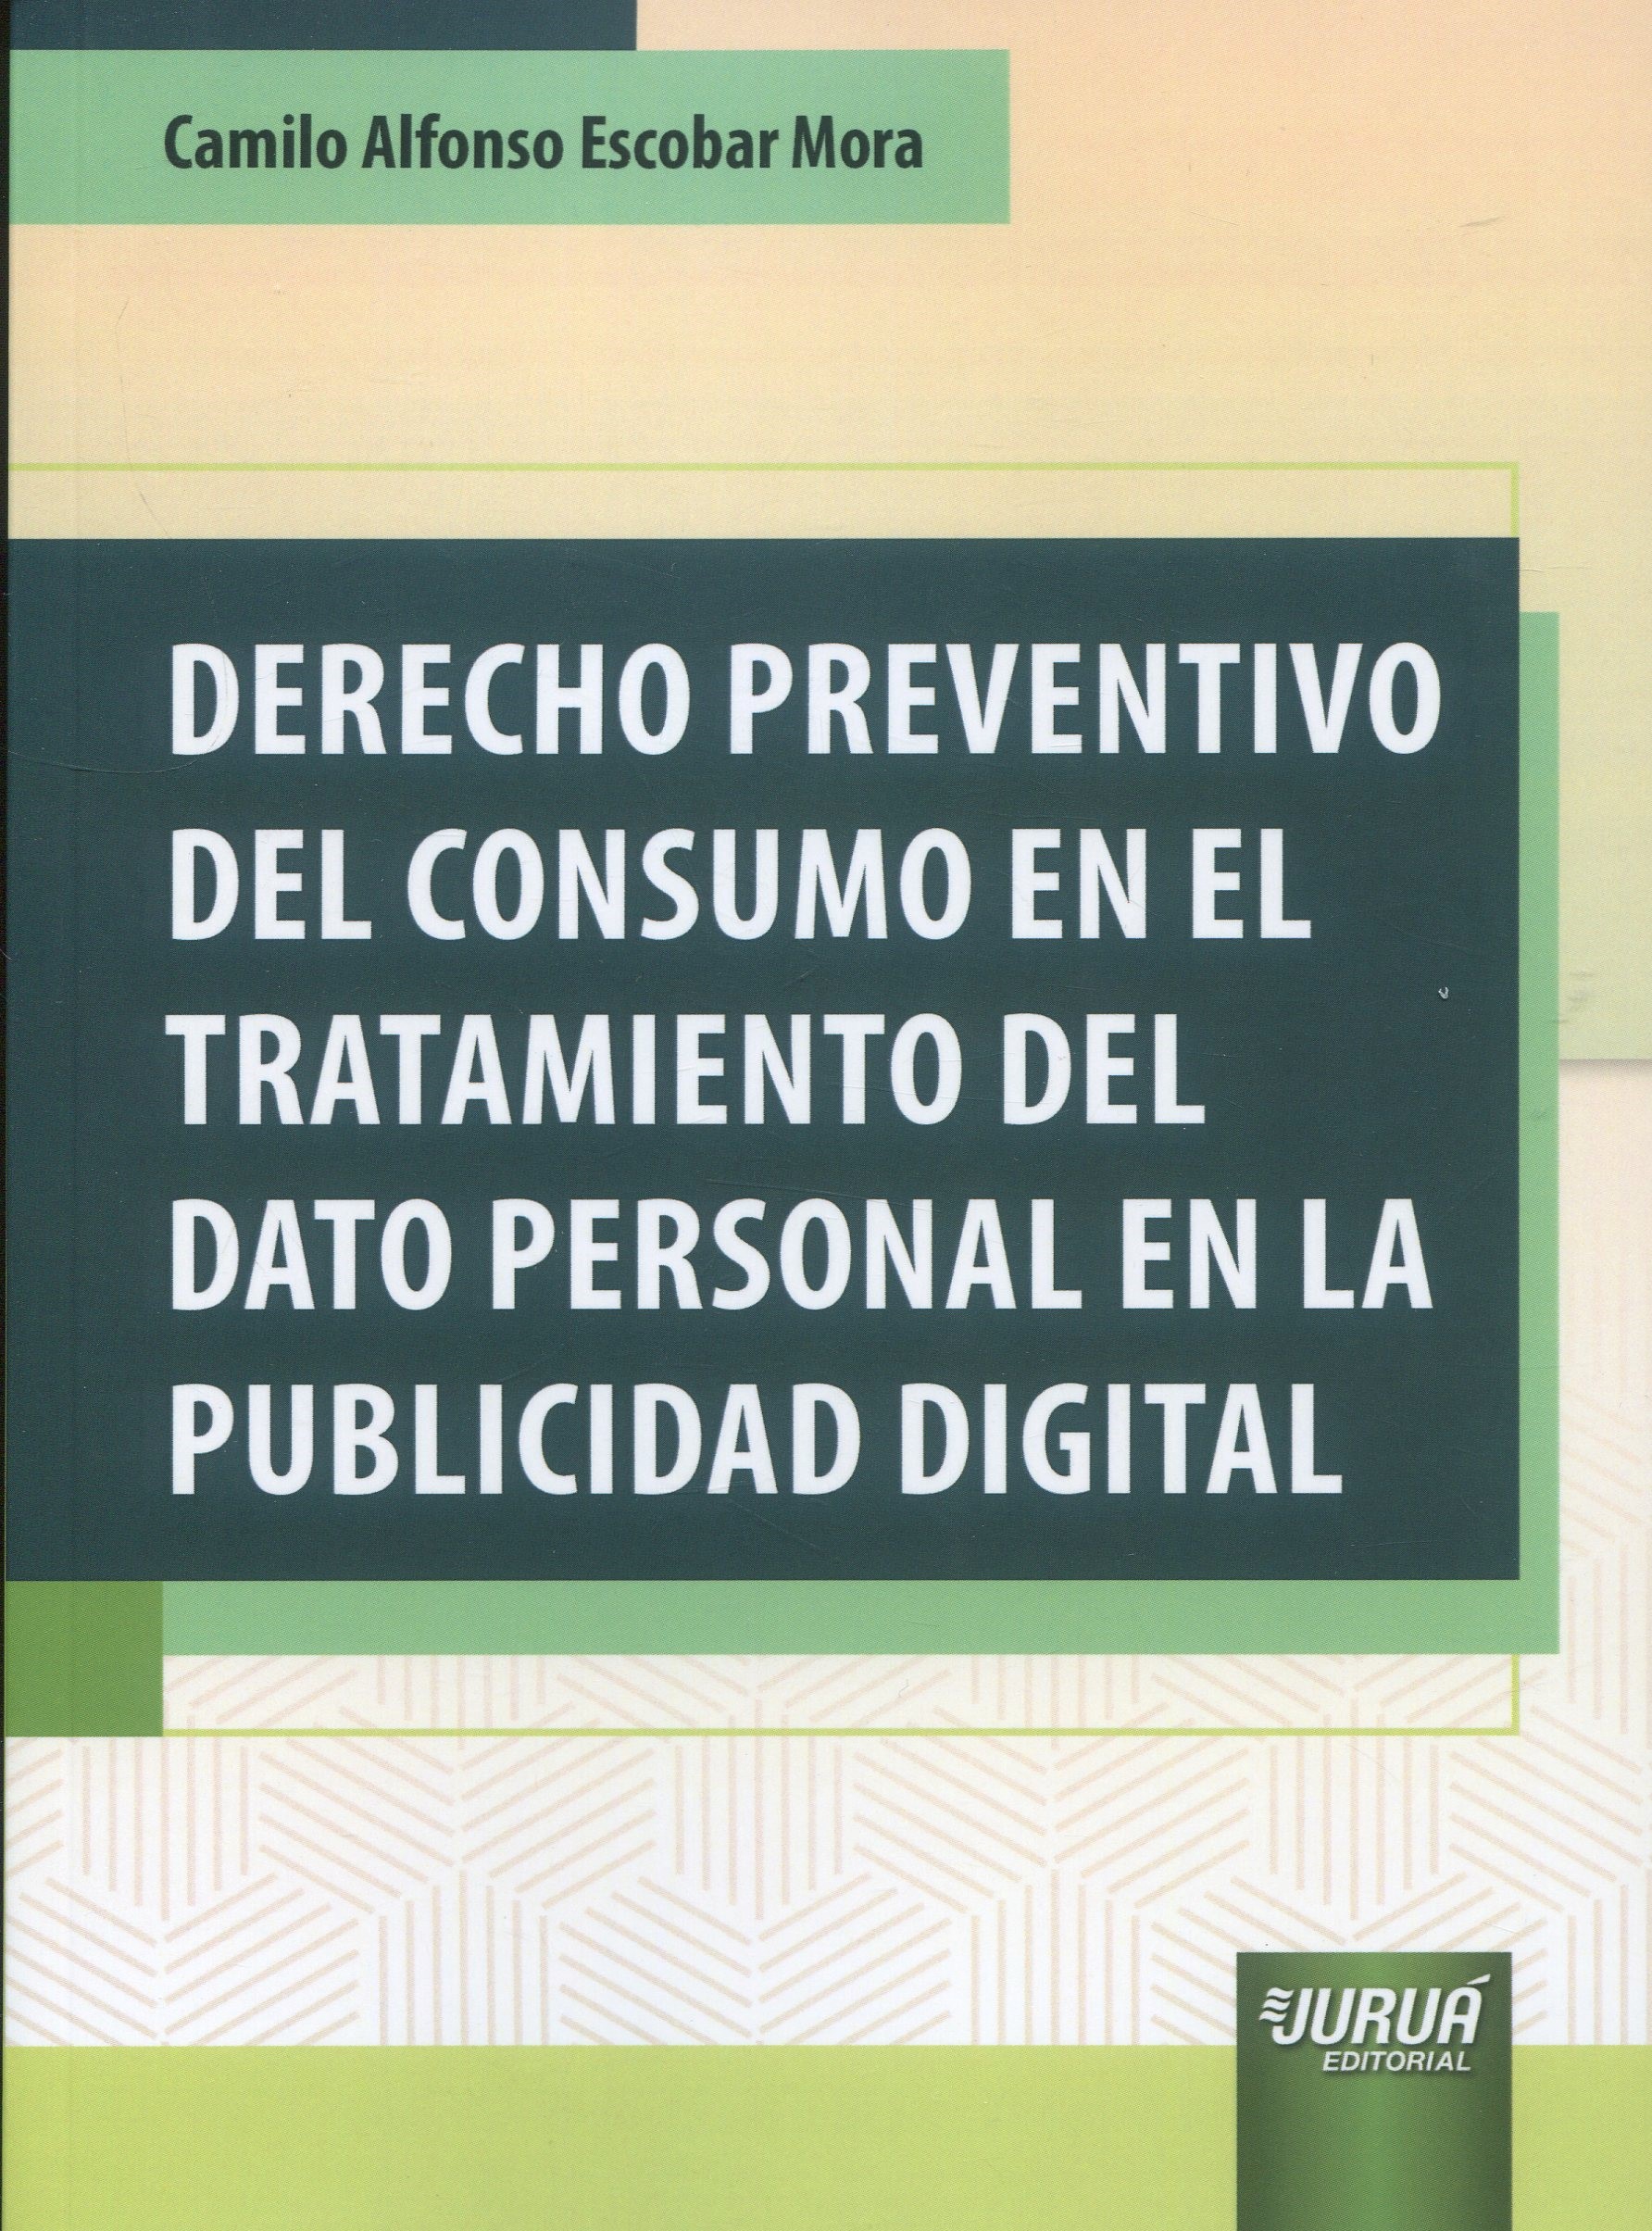 Derecho preventivo del consumo en el tratamiento del dato personal en la publicidad digital